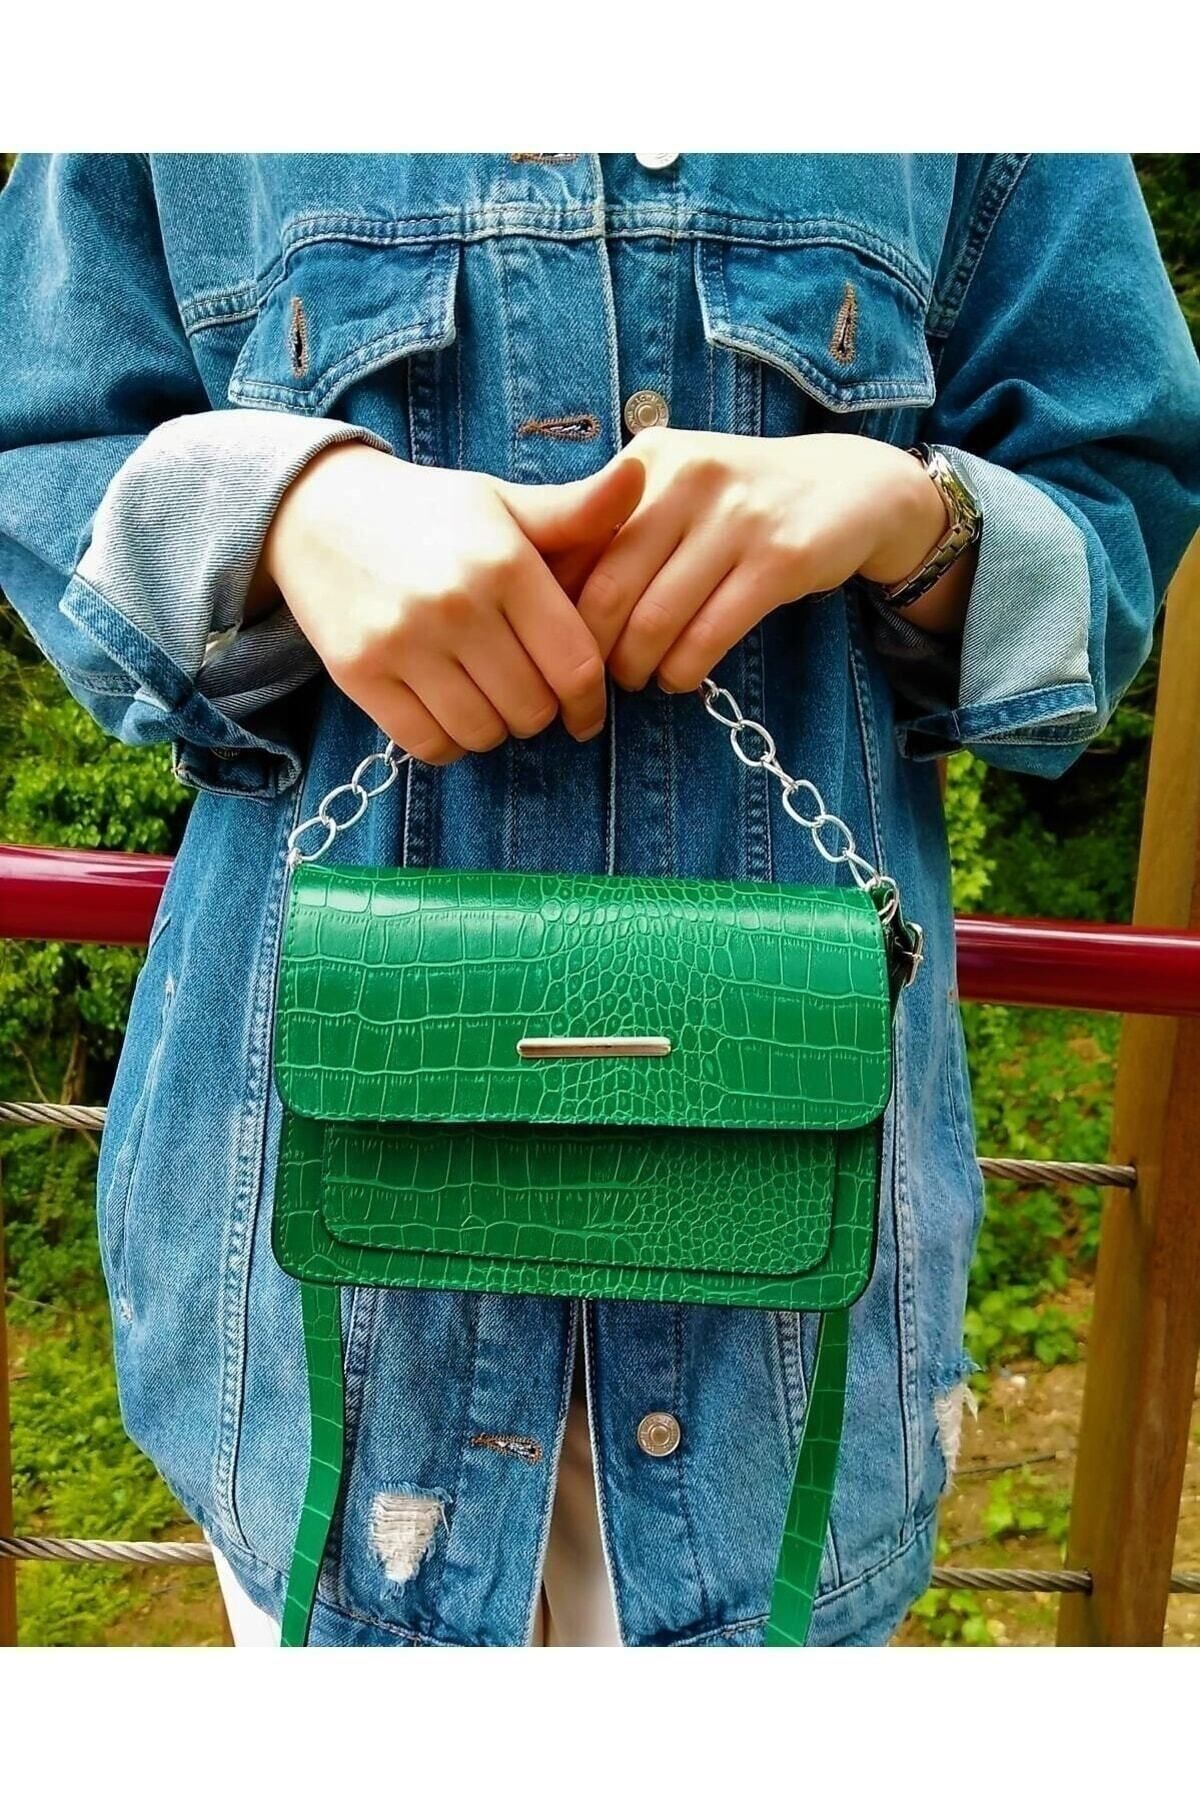 MEİZEN Çantabest Kadın Yeşil Timsah Desenli Clutch Baget Zincir Askılı Çanta